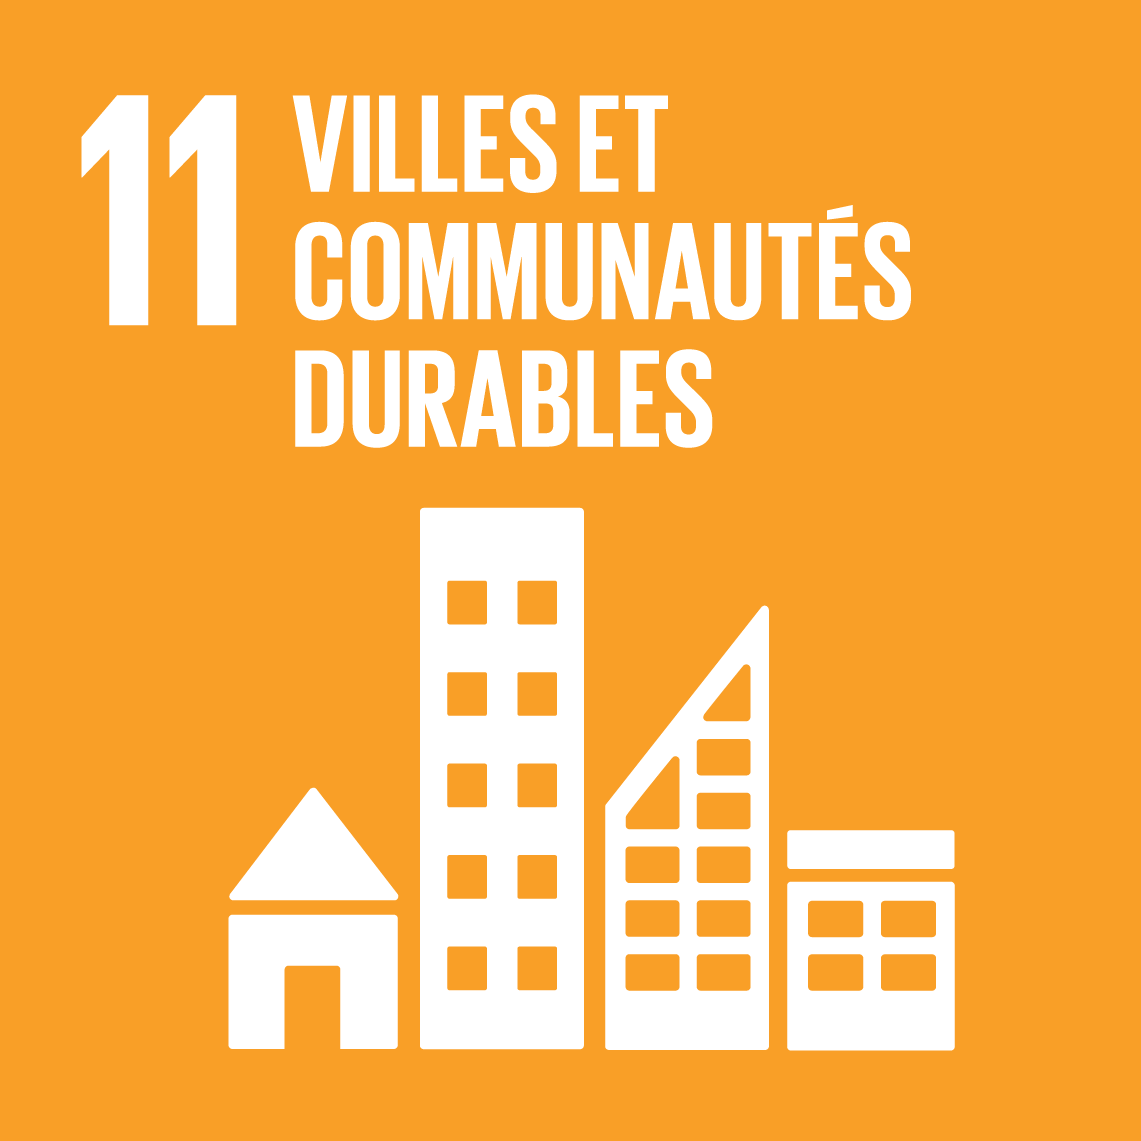 Objectifs de développement durable 11 - Villes et communautés durables